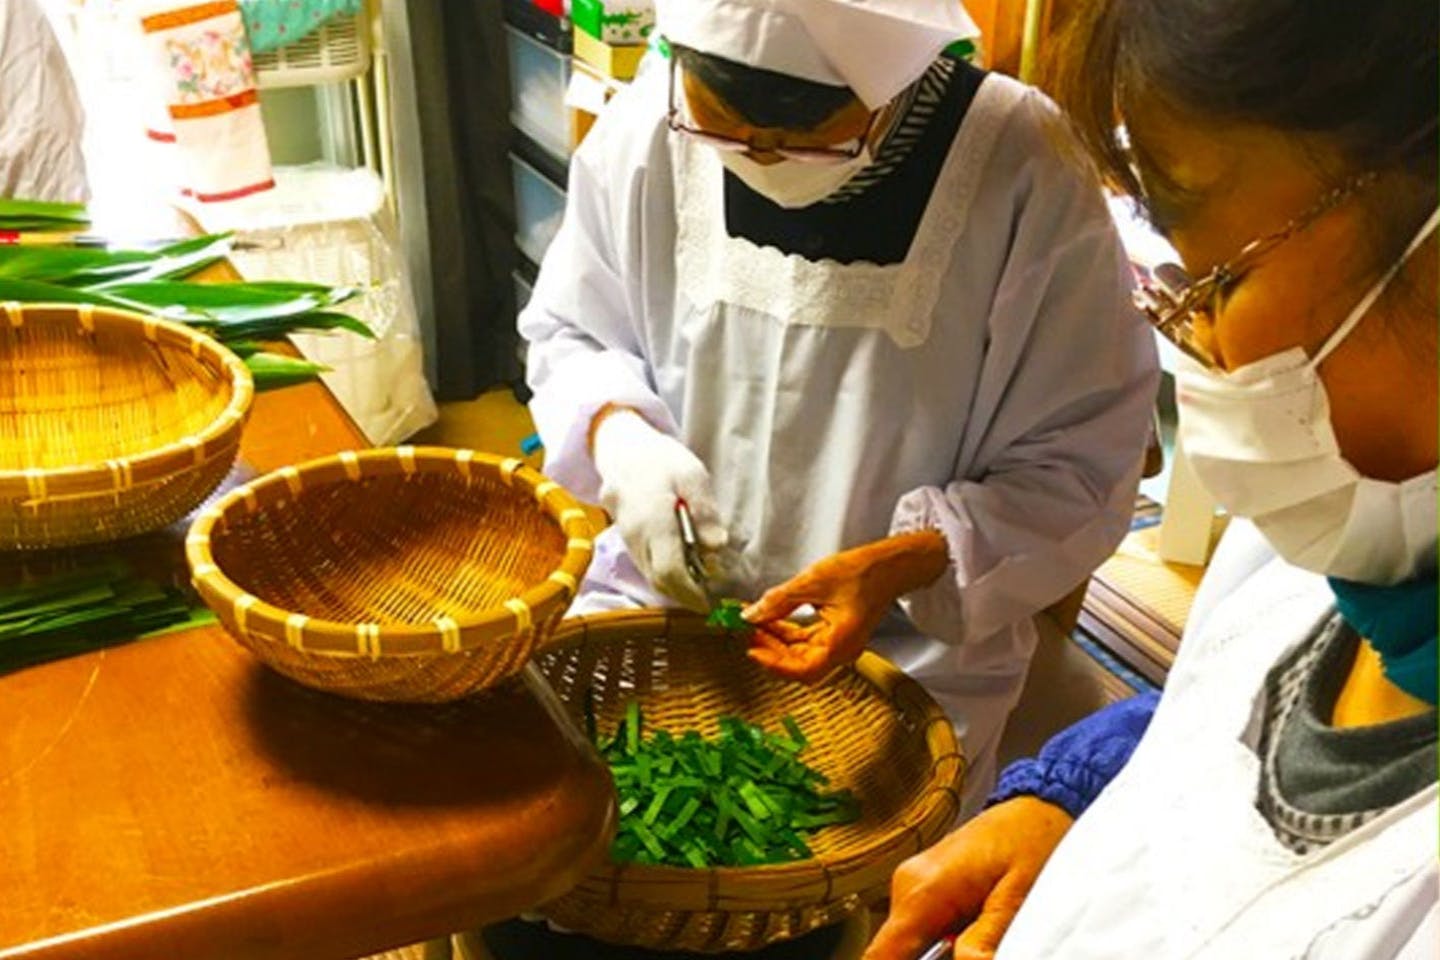 【鹿児島・種子島・工房見学】話題の温活にも♪種子島に自生する薬草を使った月桃茶工房体験